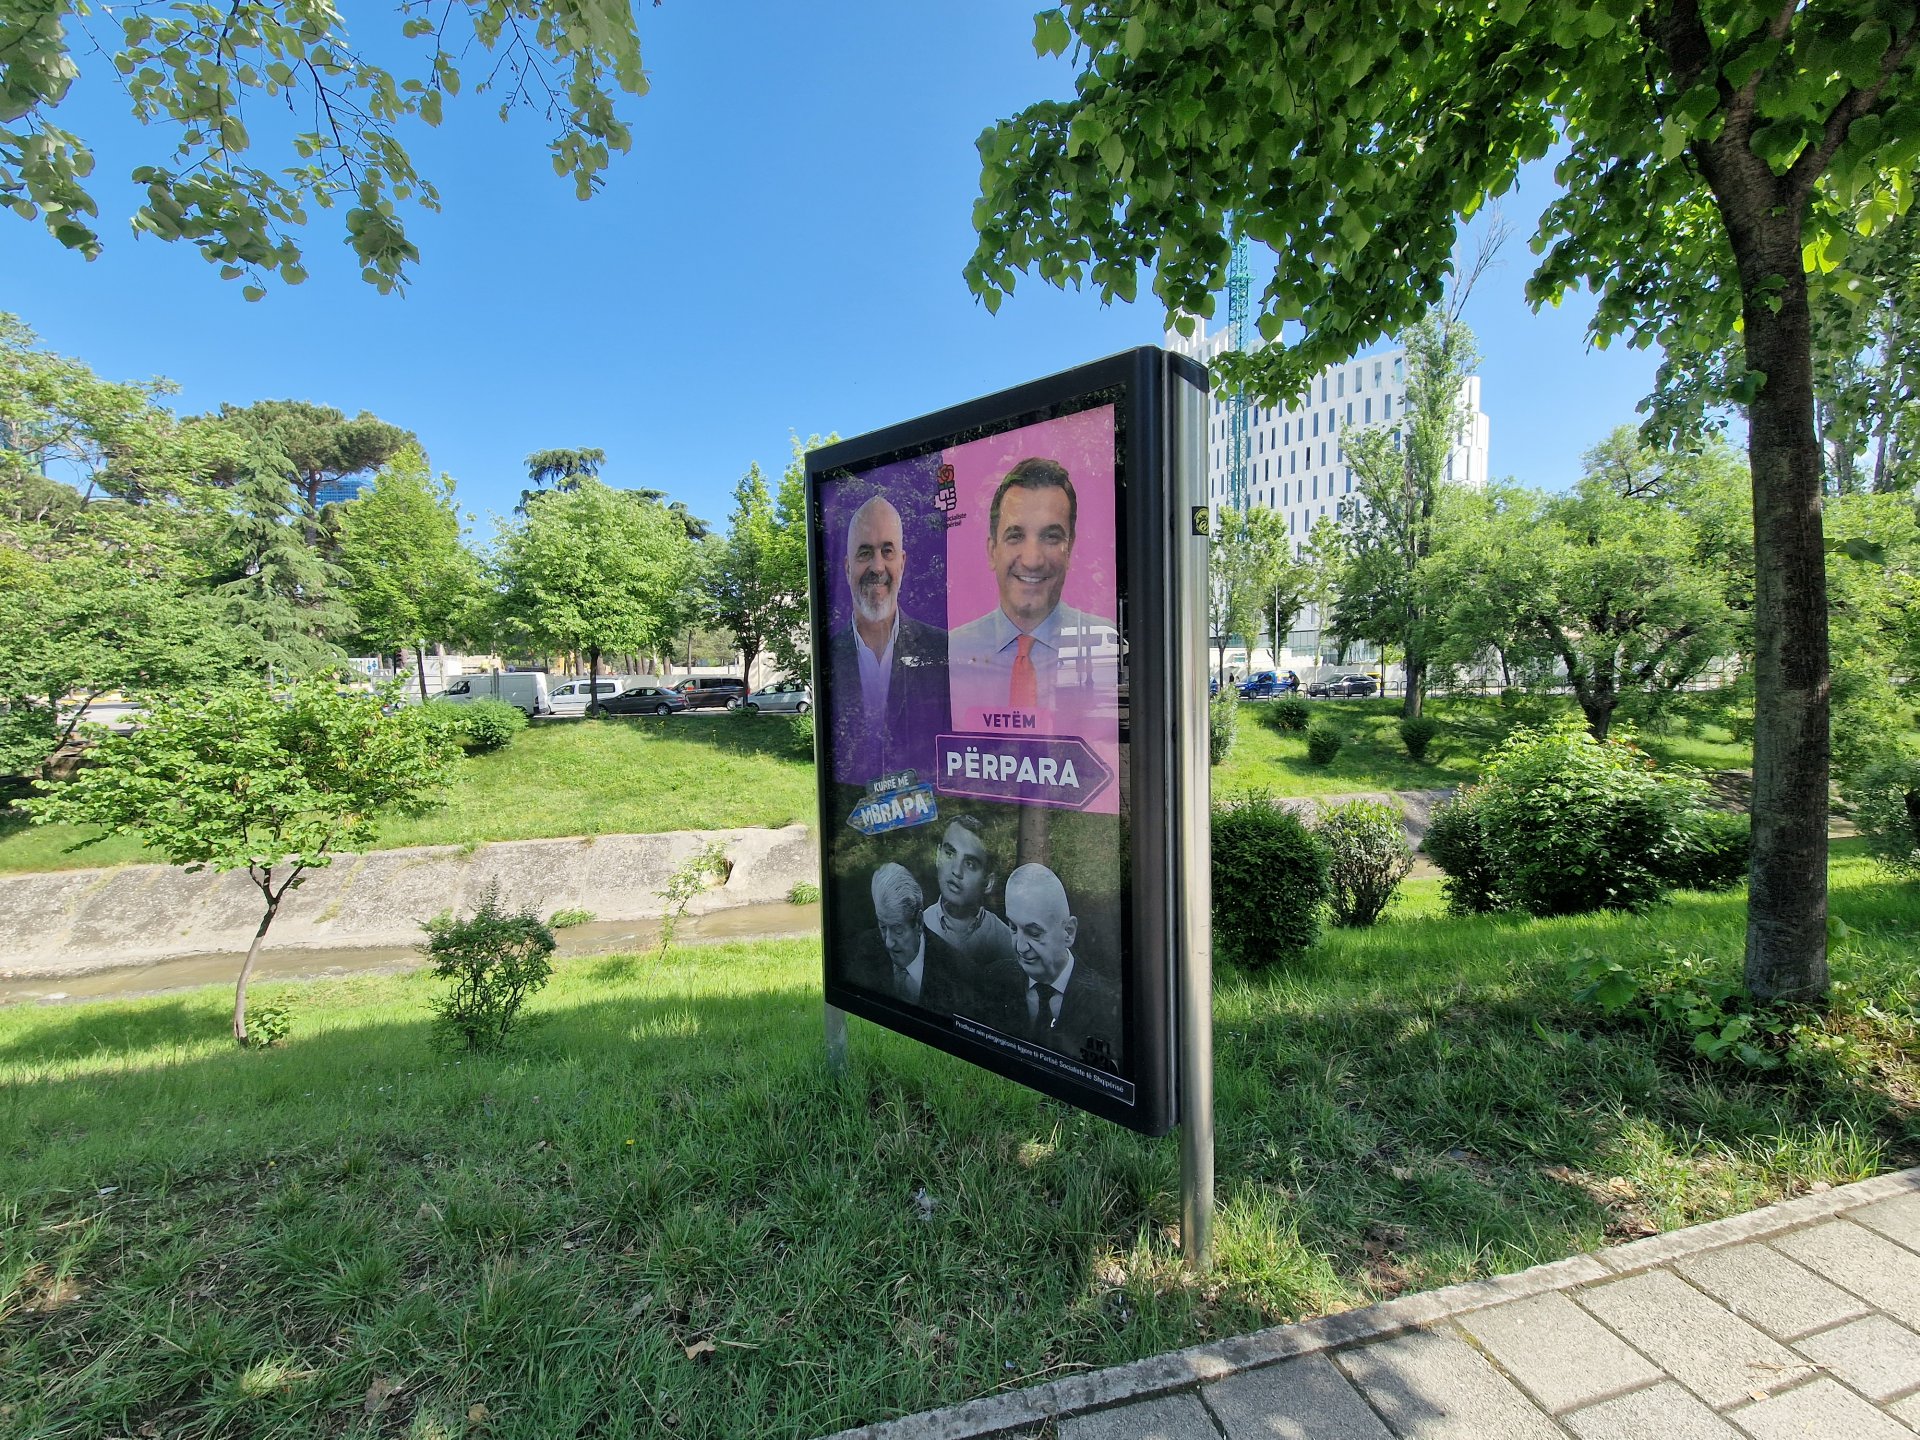 Плакат на премиера на Албания и председател на Социалистическата партия Еди Рама (горе вляво) и кандидатът на социалистите за Тирана Ерион Велиай (горе вдясно). Долу на плаката са Сали Бериша, Белинд Келичи и Илир Мета от „Заедно печелим".